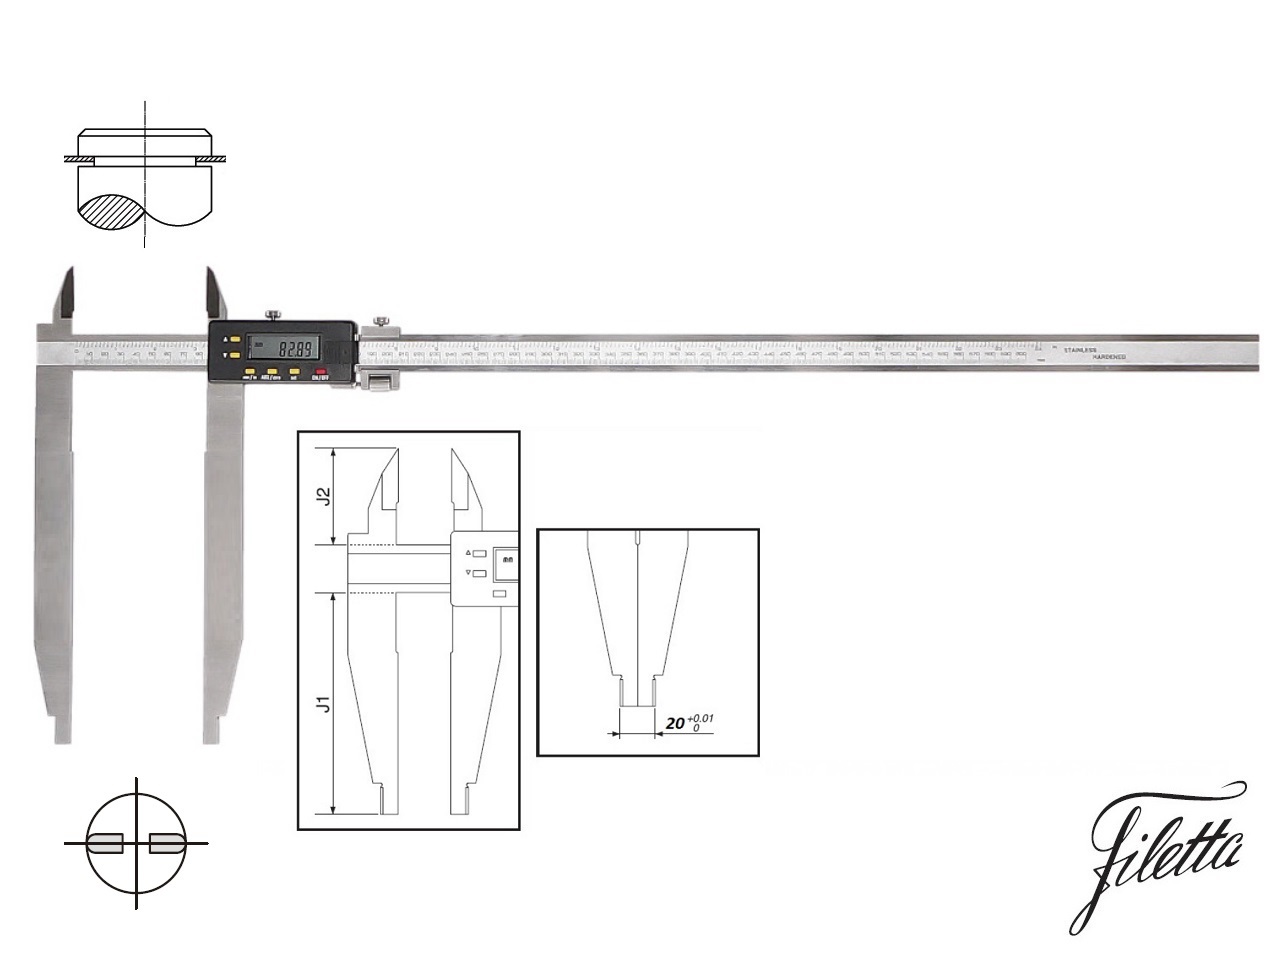 Digitální posuvné měřítko Filetta 0-600/300 mm s měřicími nožíky pro vnější měření